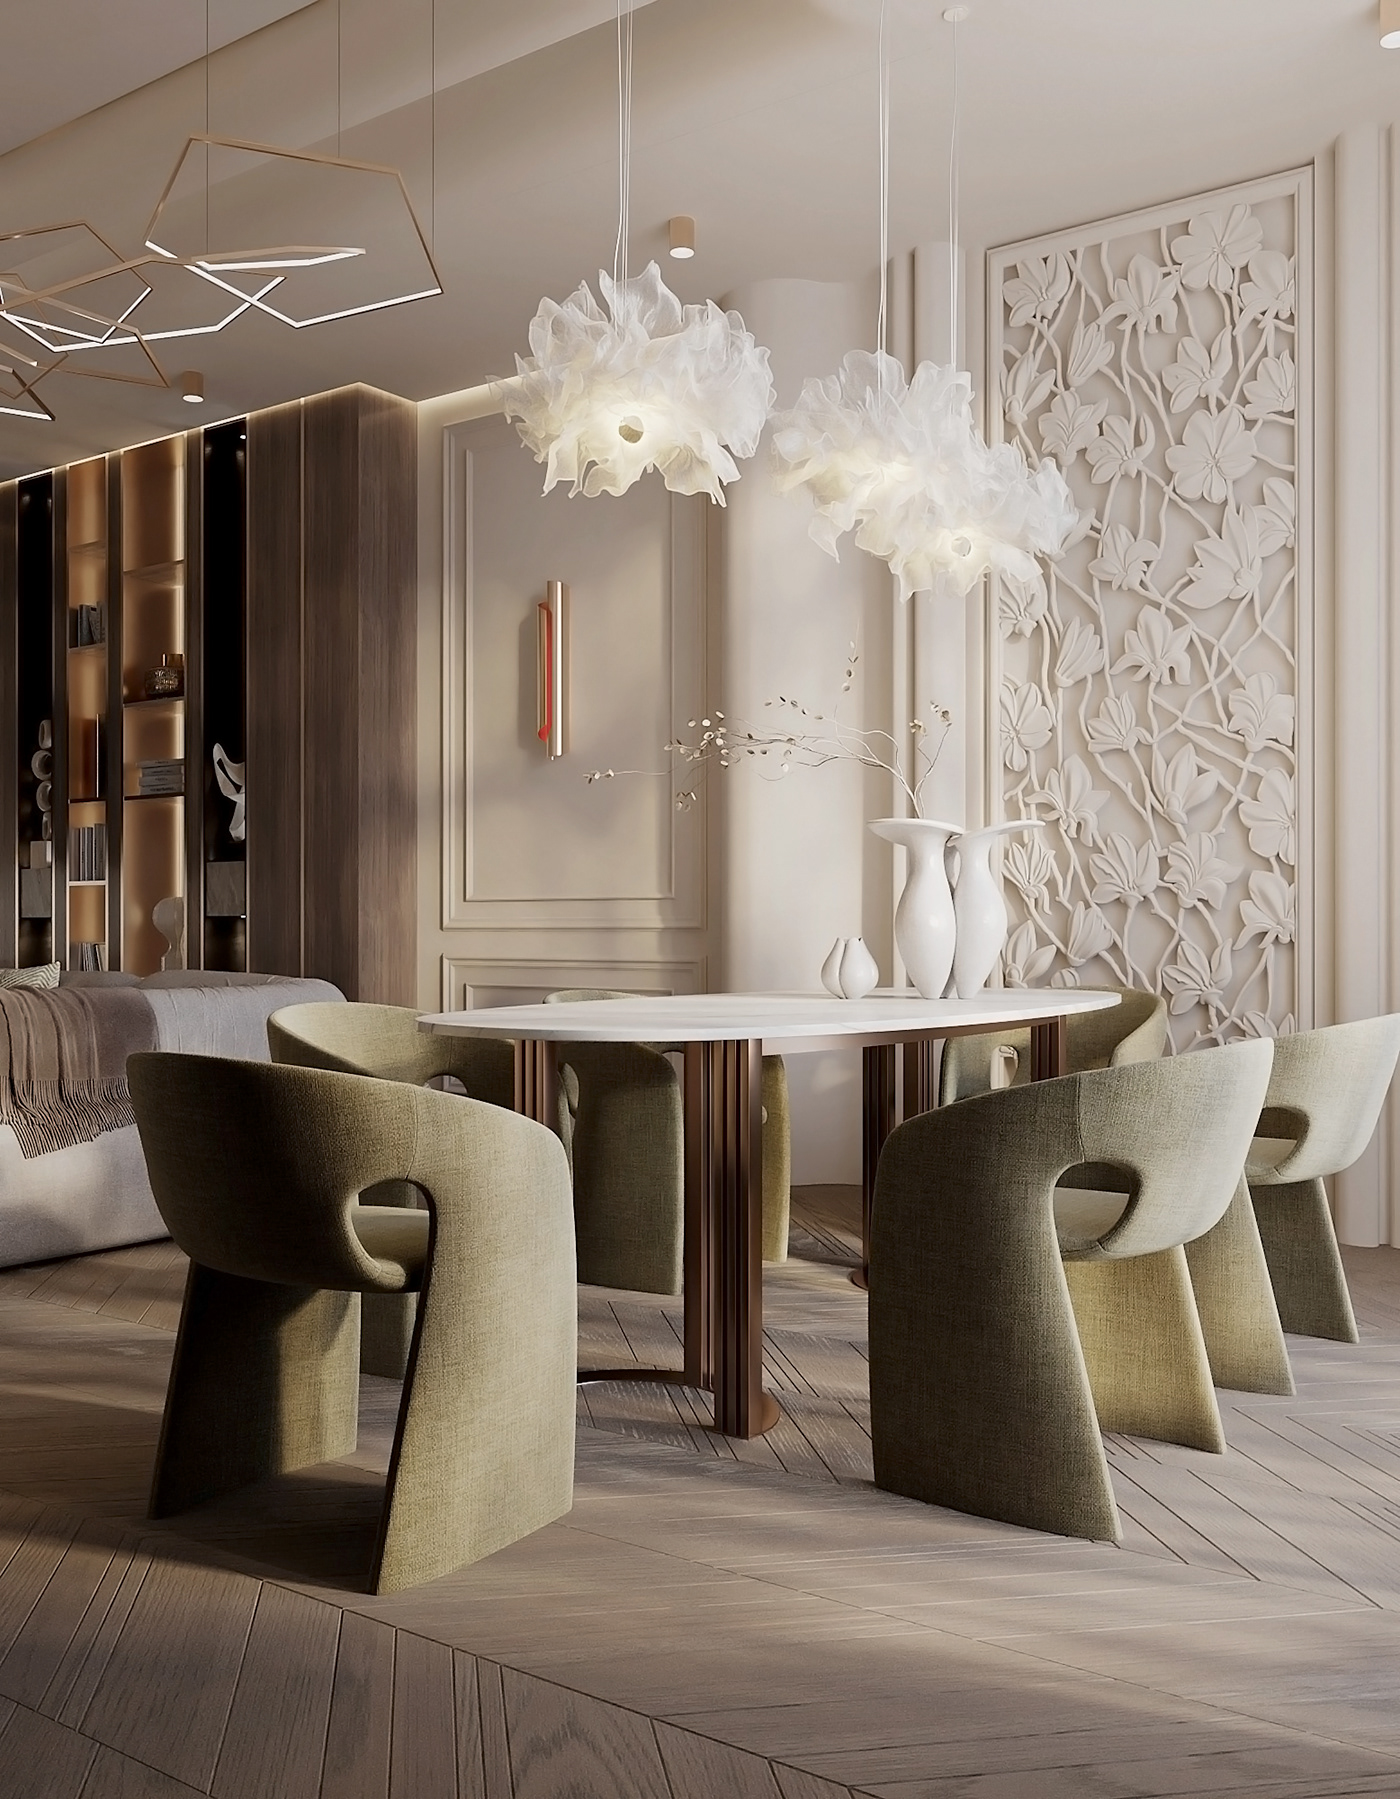 интерьер дизайн интерьера визуализация visualization 3ds max CGI interior design  Визуализация интерьера Интерьер квартиры современный дизайн